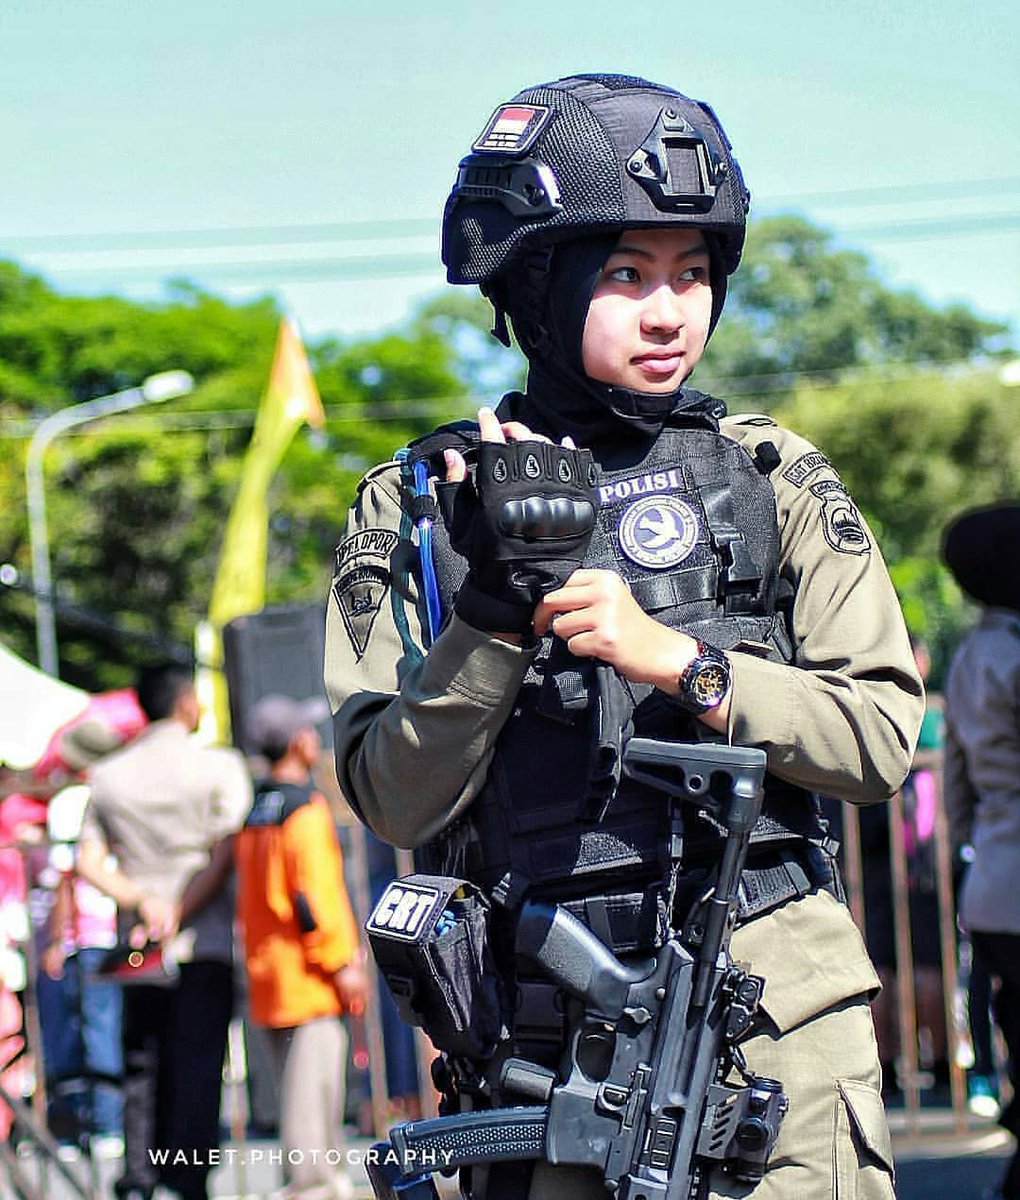 あ しゅら Auf Twitter インドネシア警察特殊部隊の女性隊員だって Mpxなんていいもの持ってるね